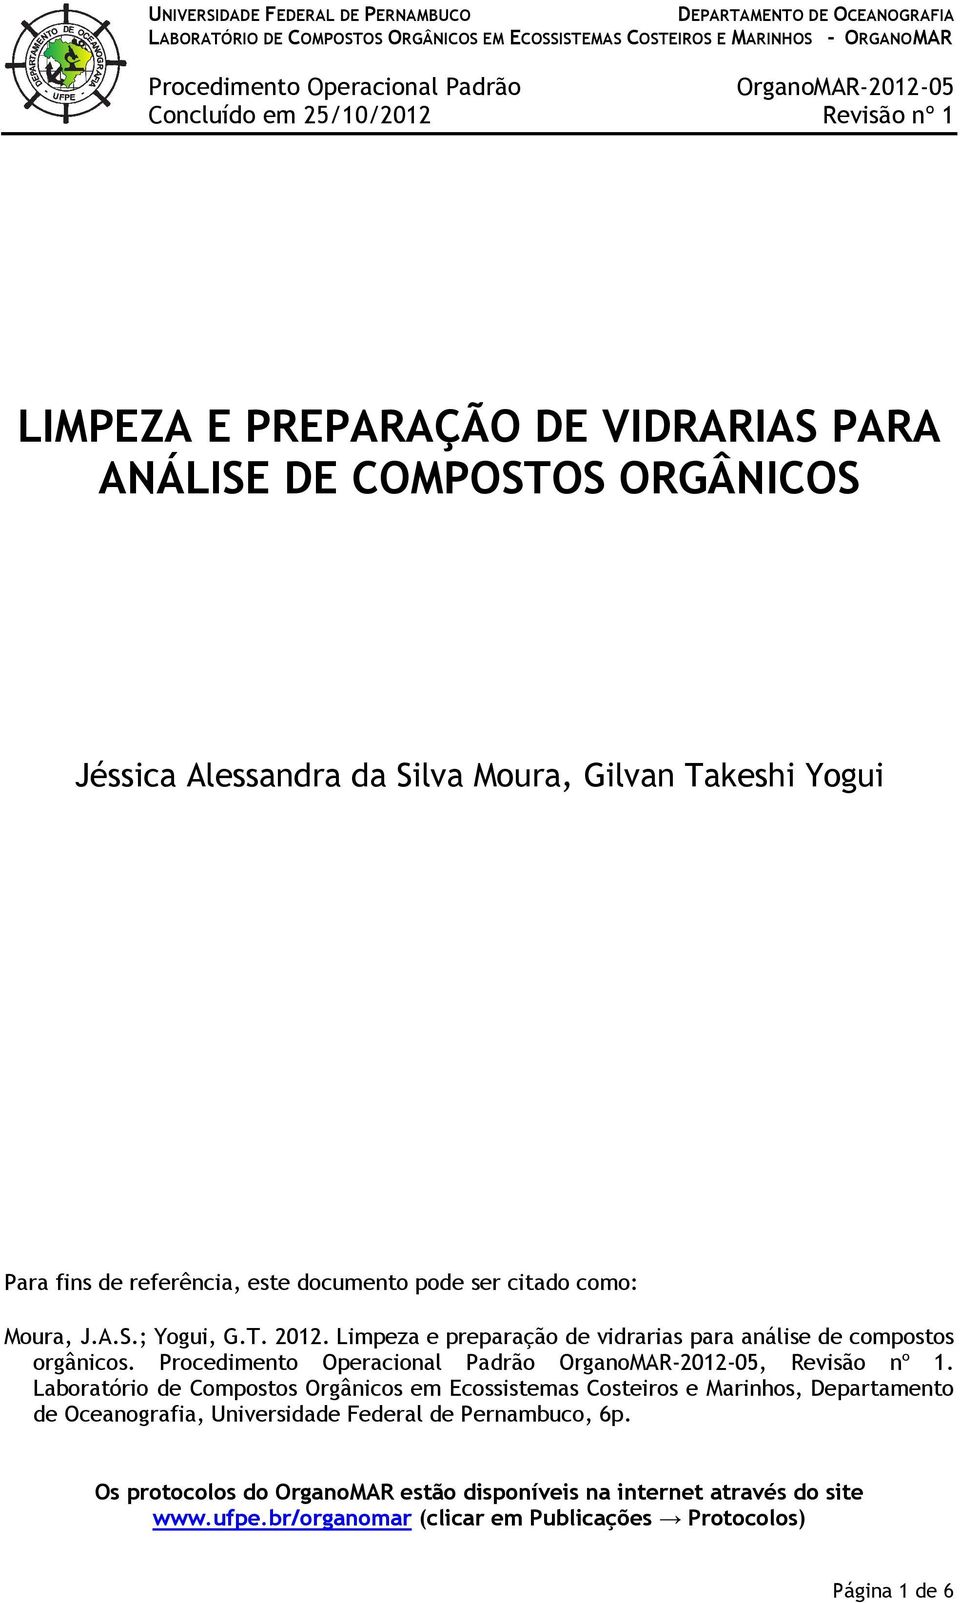 Limpeza e preparação de vidrarias para análise de compostos orgânicos., Revisão nº 1.